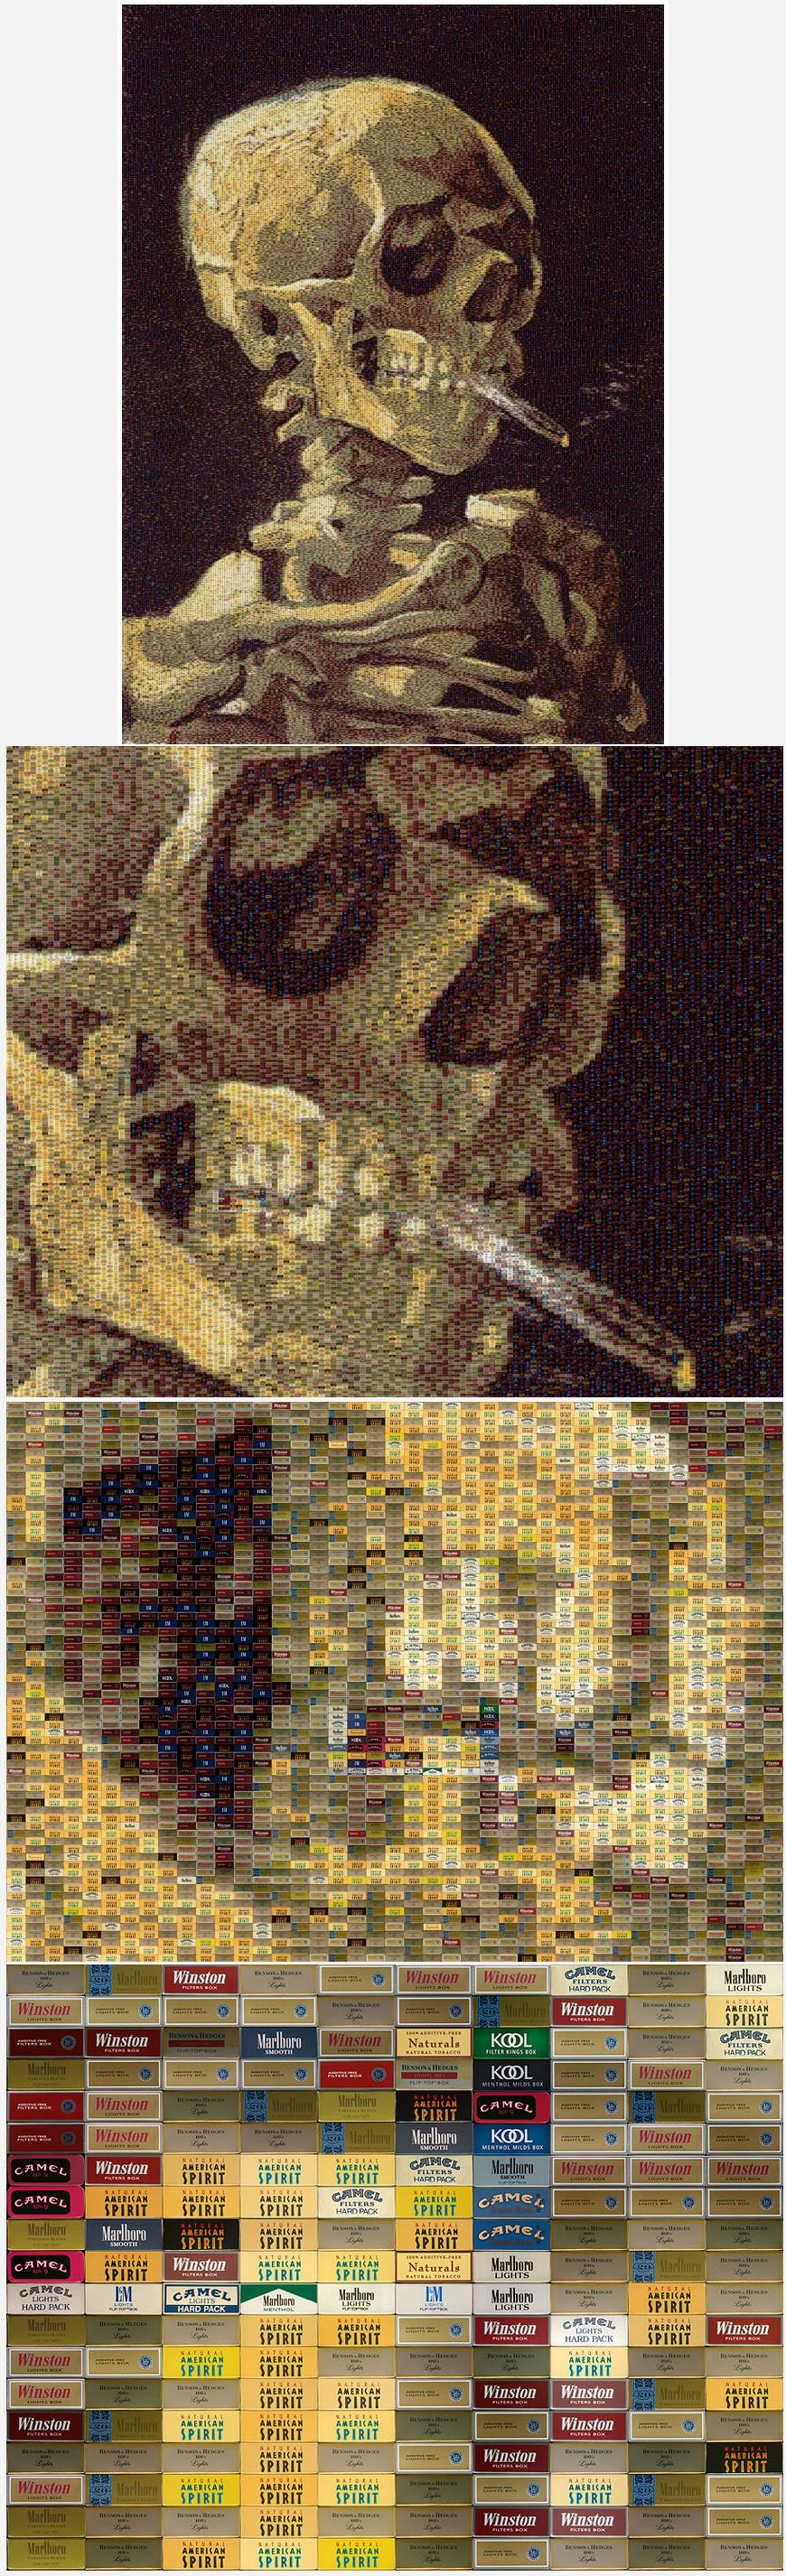 Crâne d'homme avec cigarette allumée